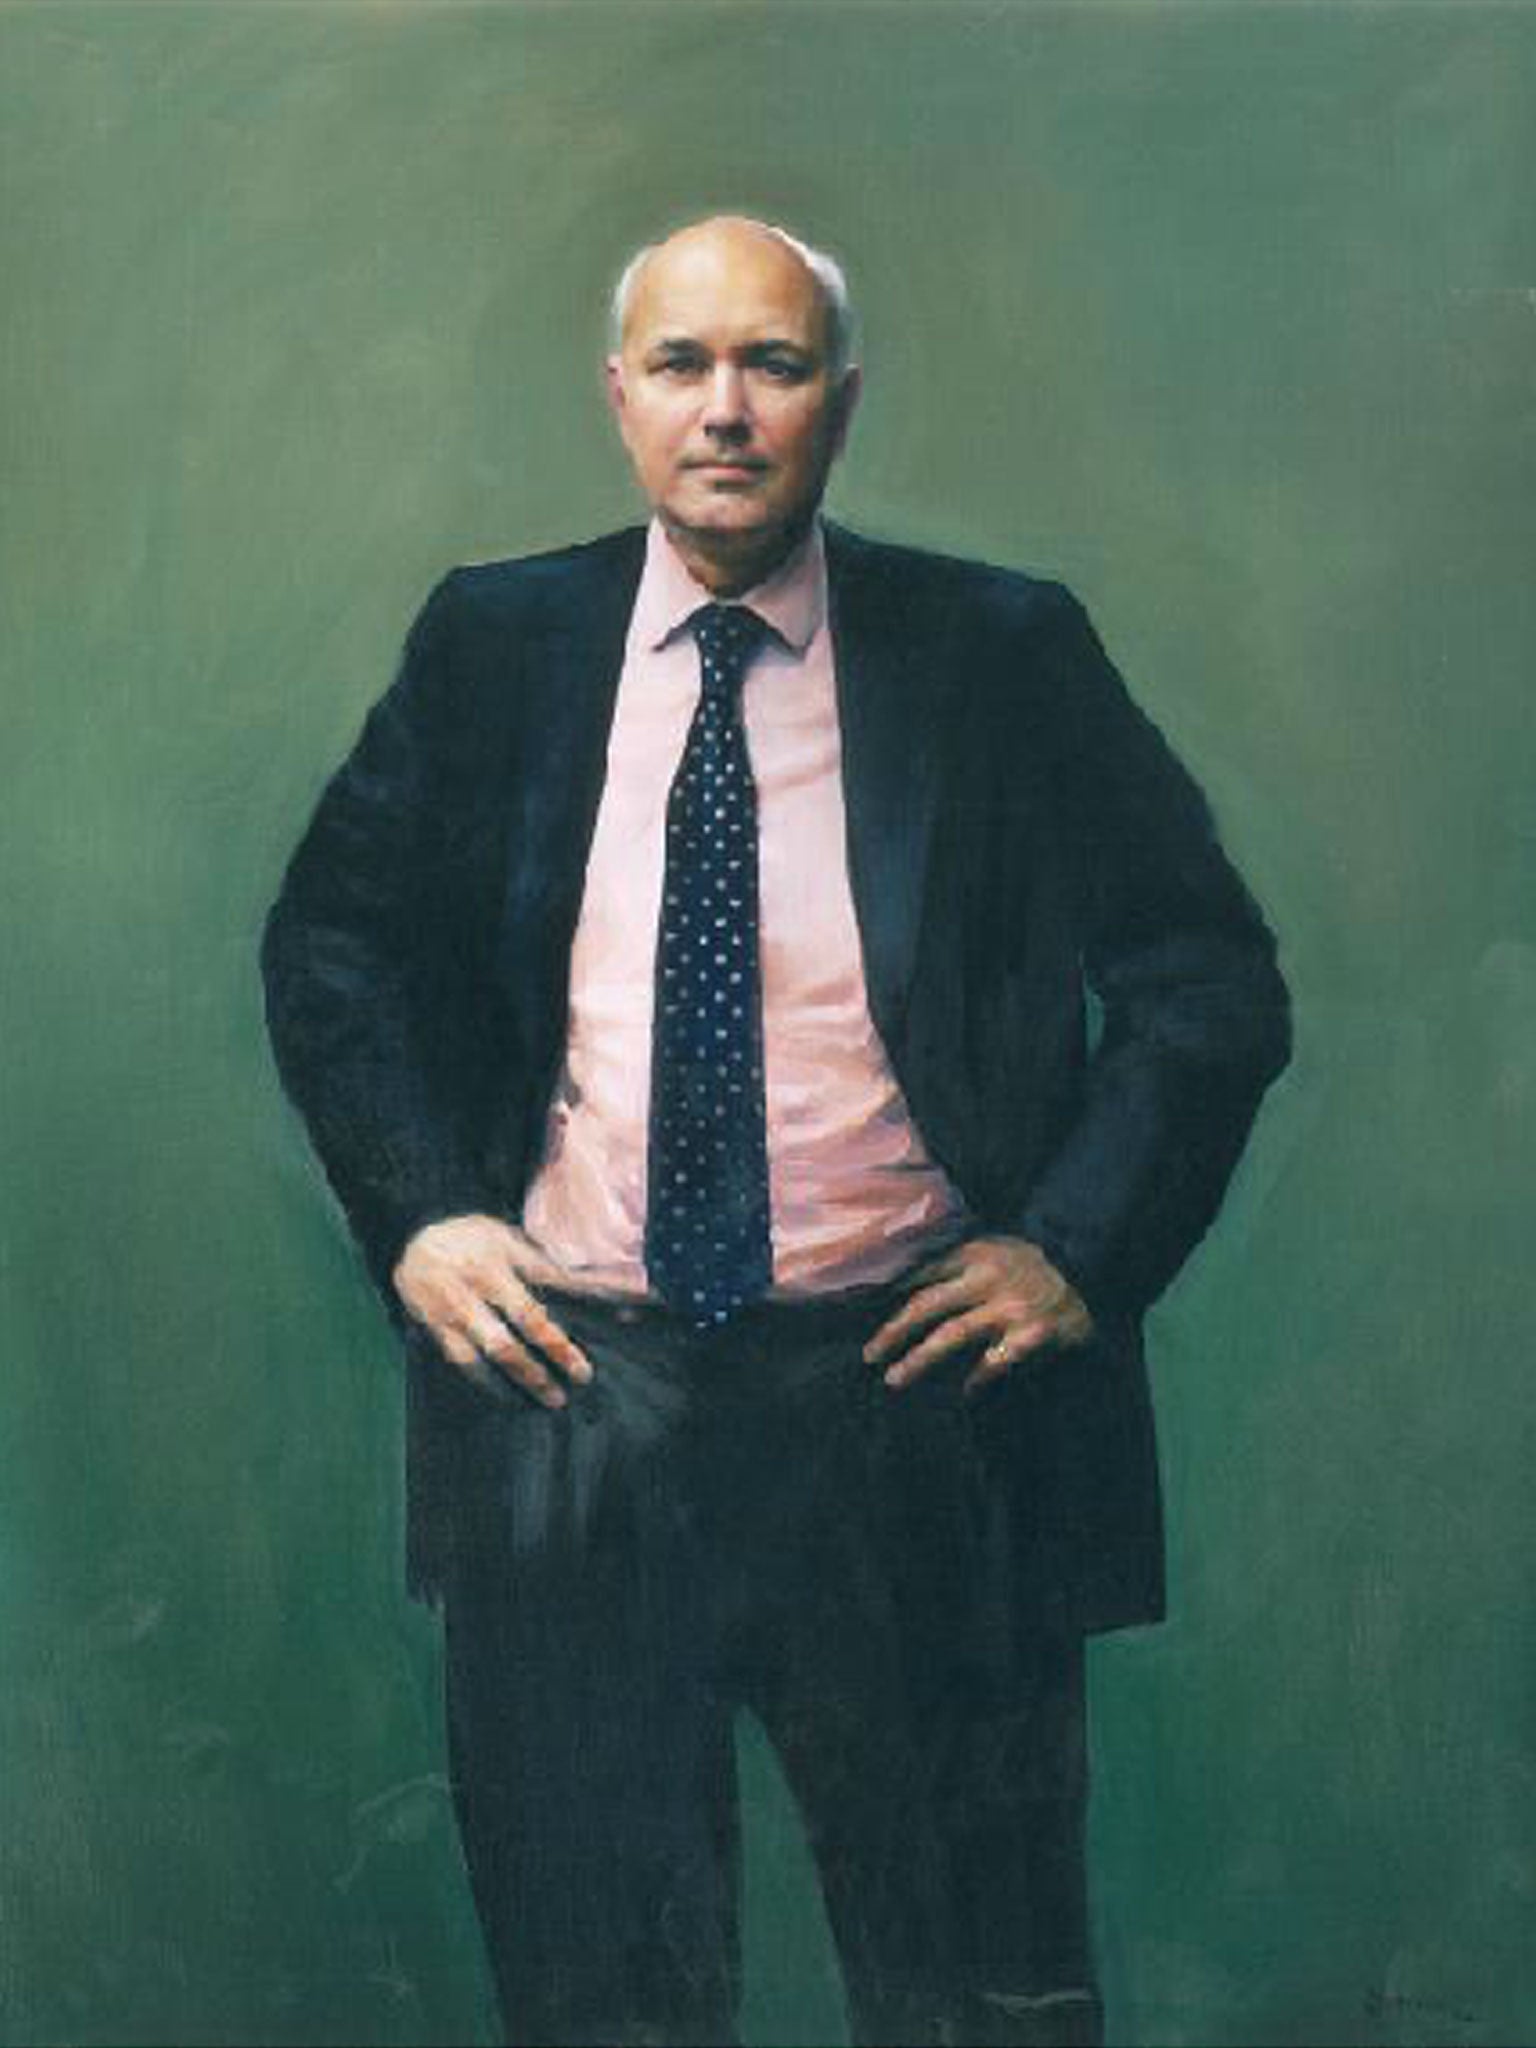 A £10,000 portrait of MP Iain Duncan Smith by Paul Benney